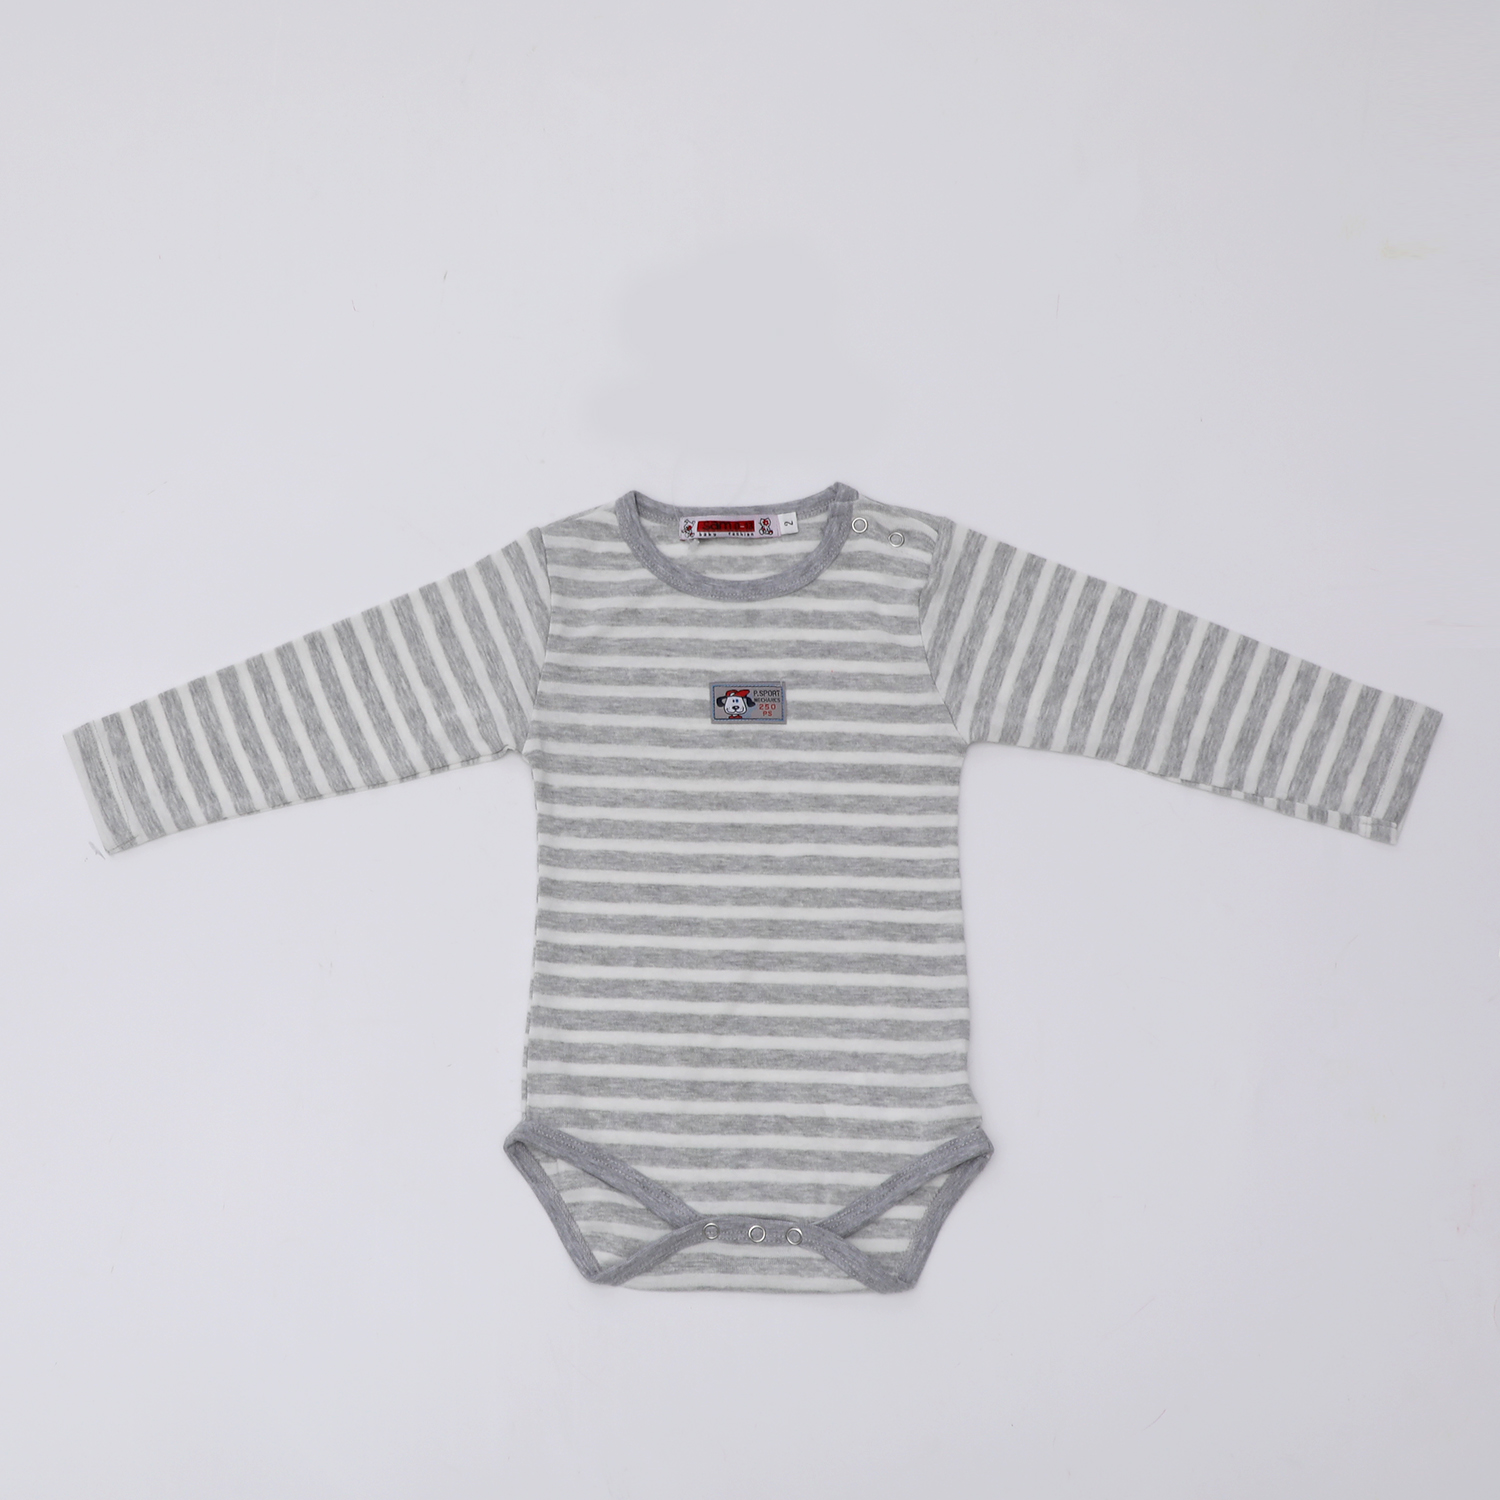 Παιδικά/Boys/Ρούχα/Μπλούζες Μακρυμάνικες SAM 0-13 - Παιδικό φορμάκι SAM 0-13 γκρι λευκό